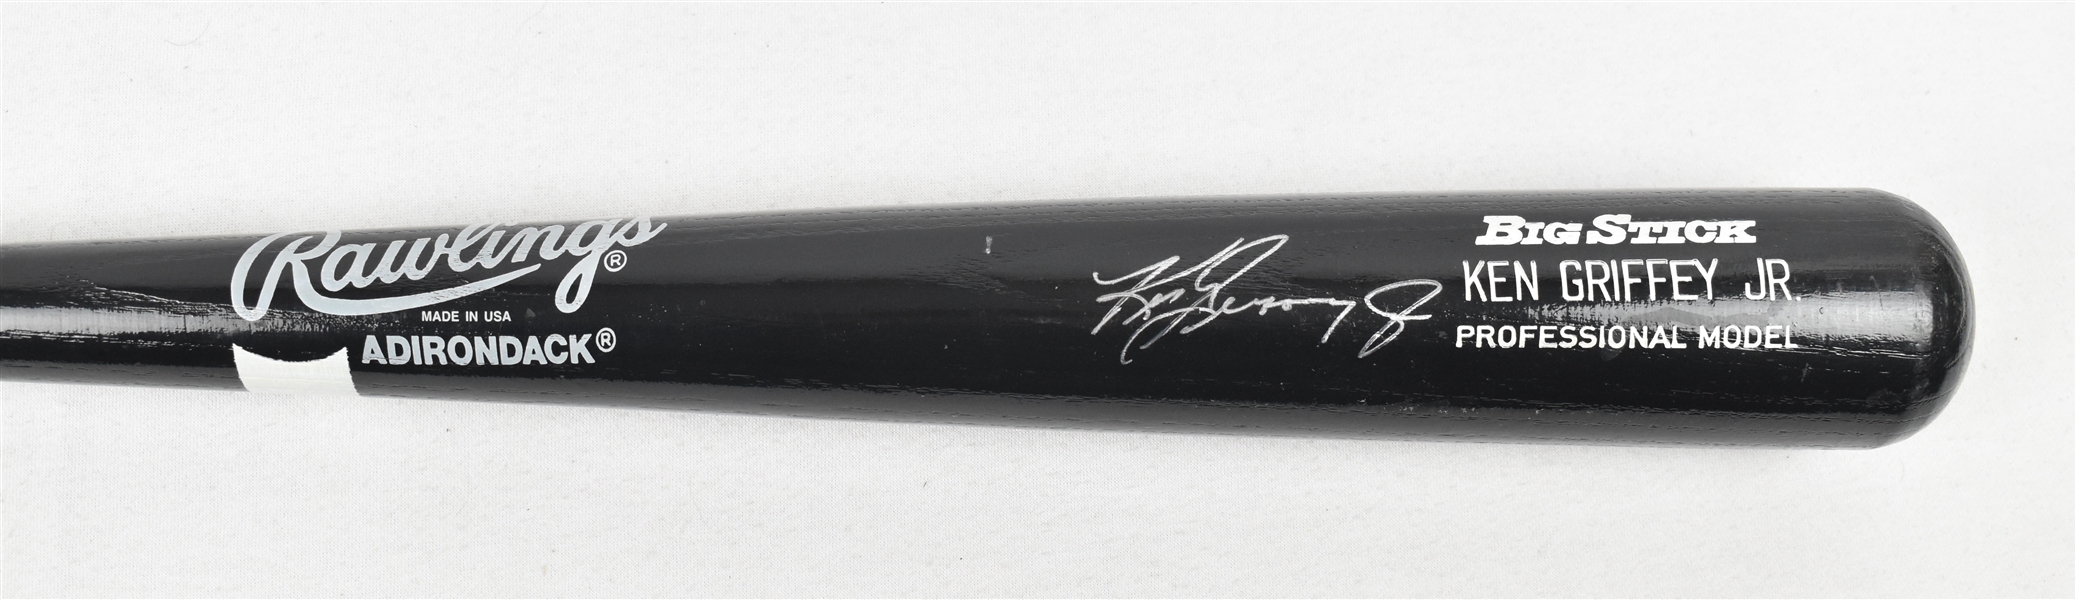 Ken Griffey Jr. Autographed Bat